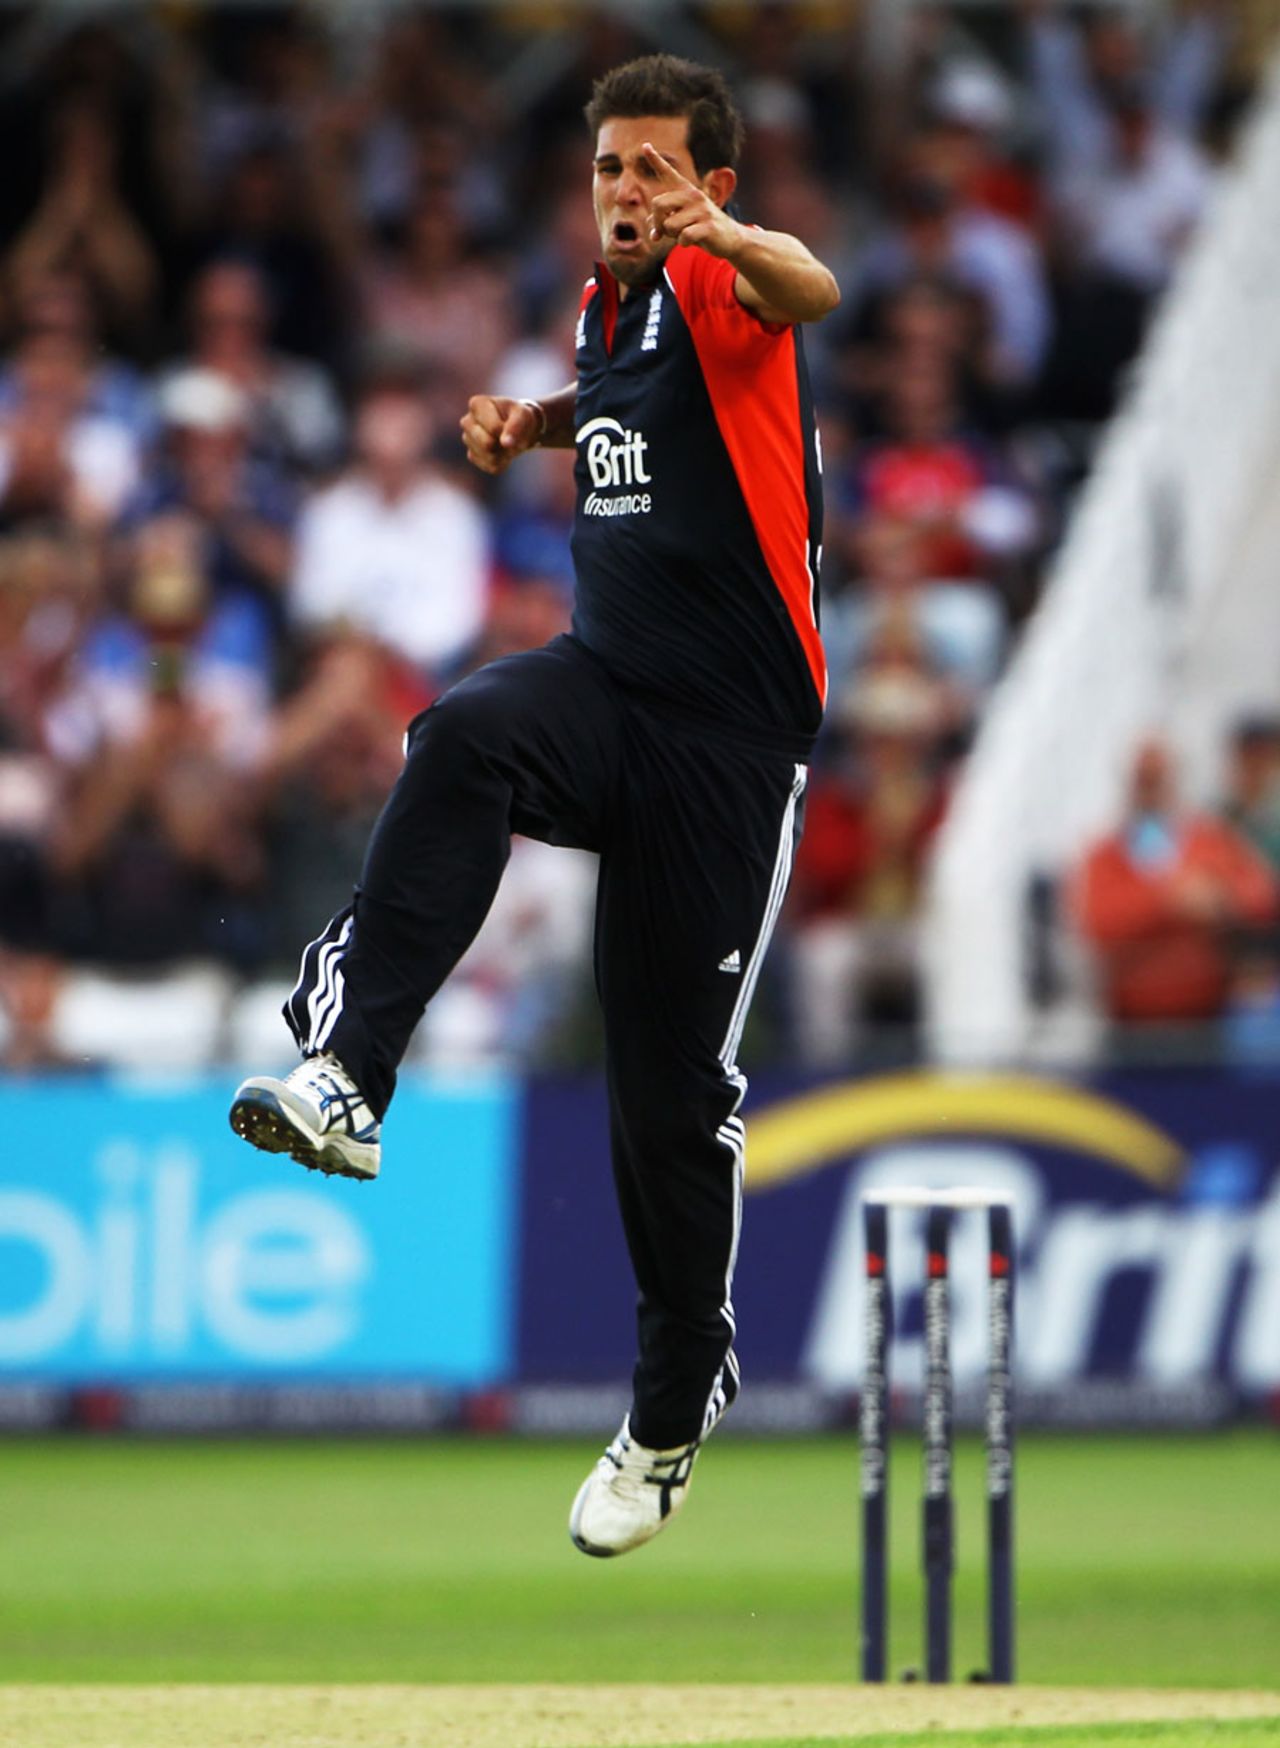 Jade Dernbach claimed career-best figures of 3 for 38, England v Sri Lanka, 4th ODI, Trent Bridge, July 6 2011